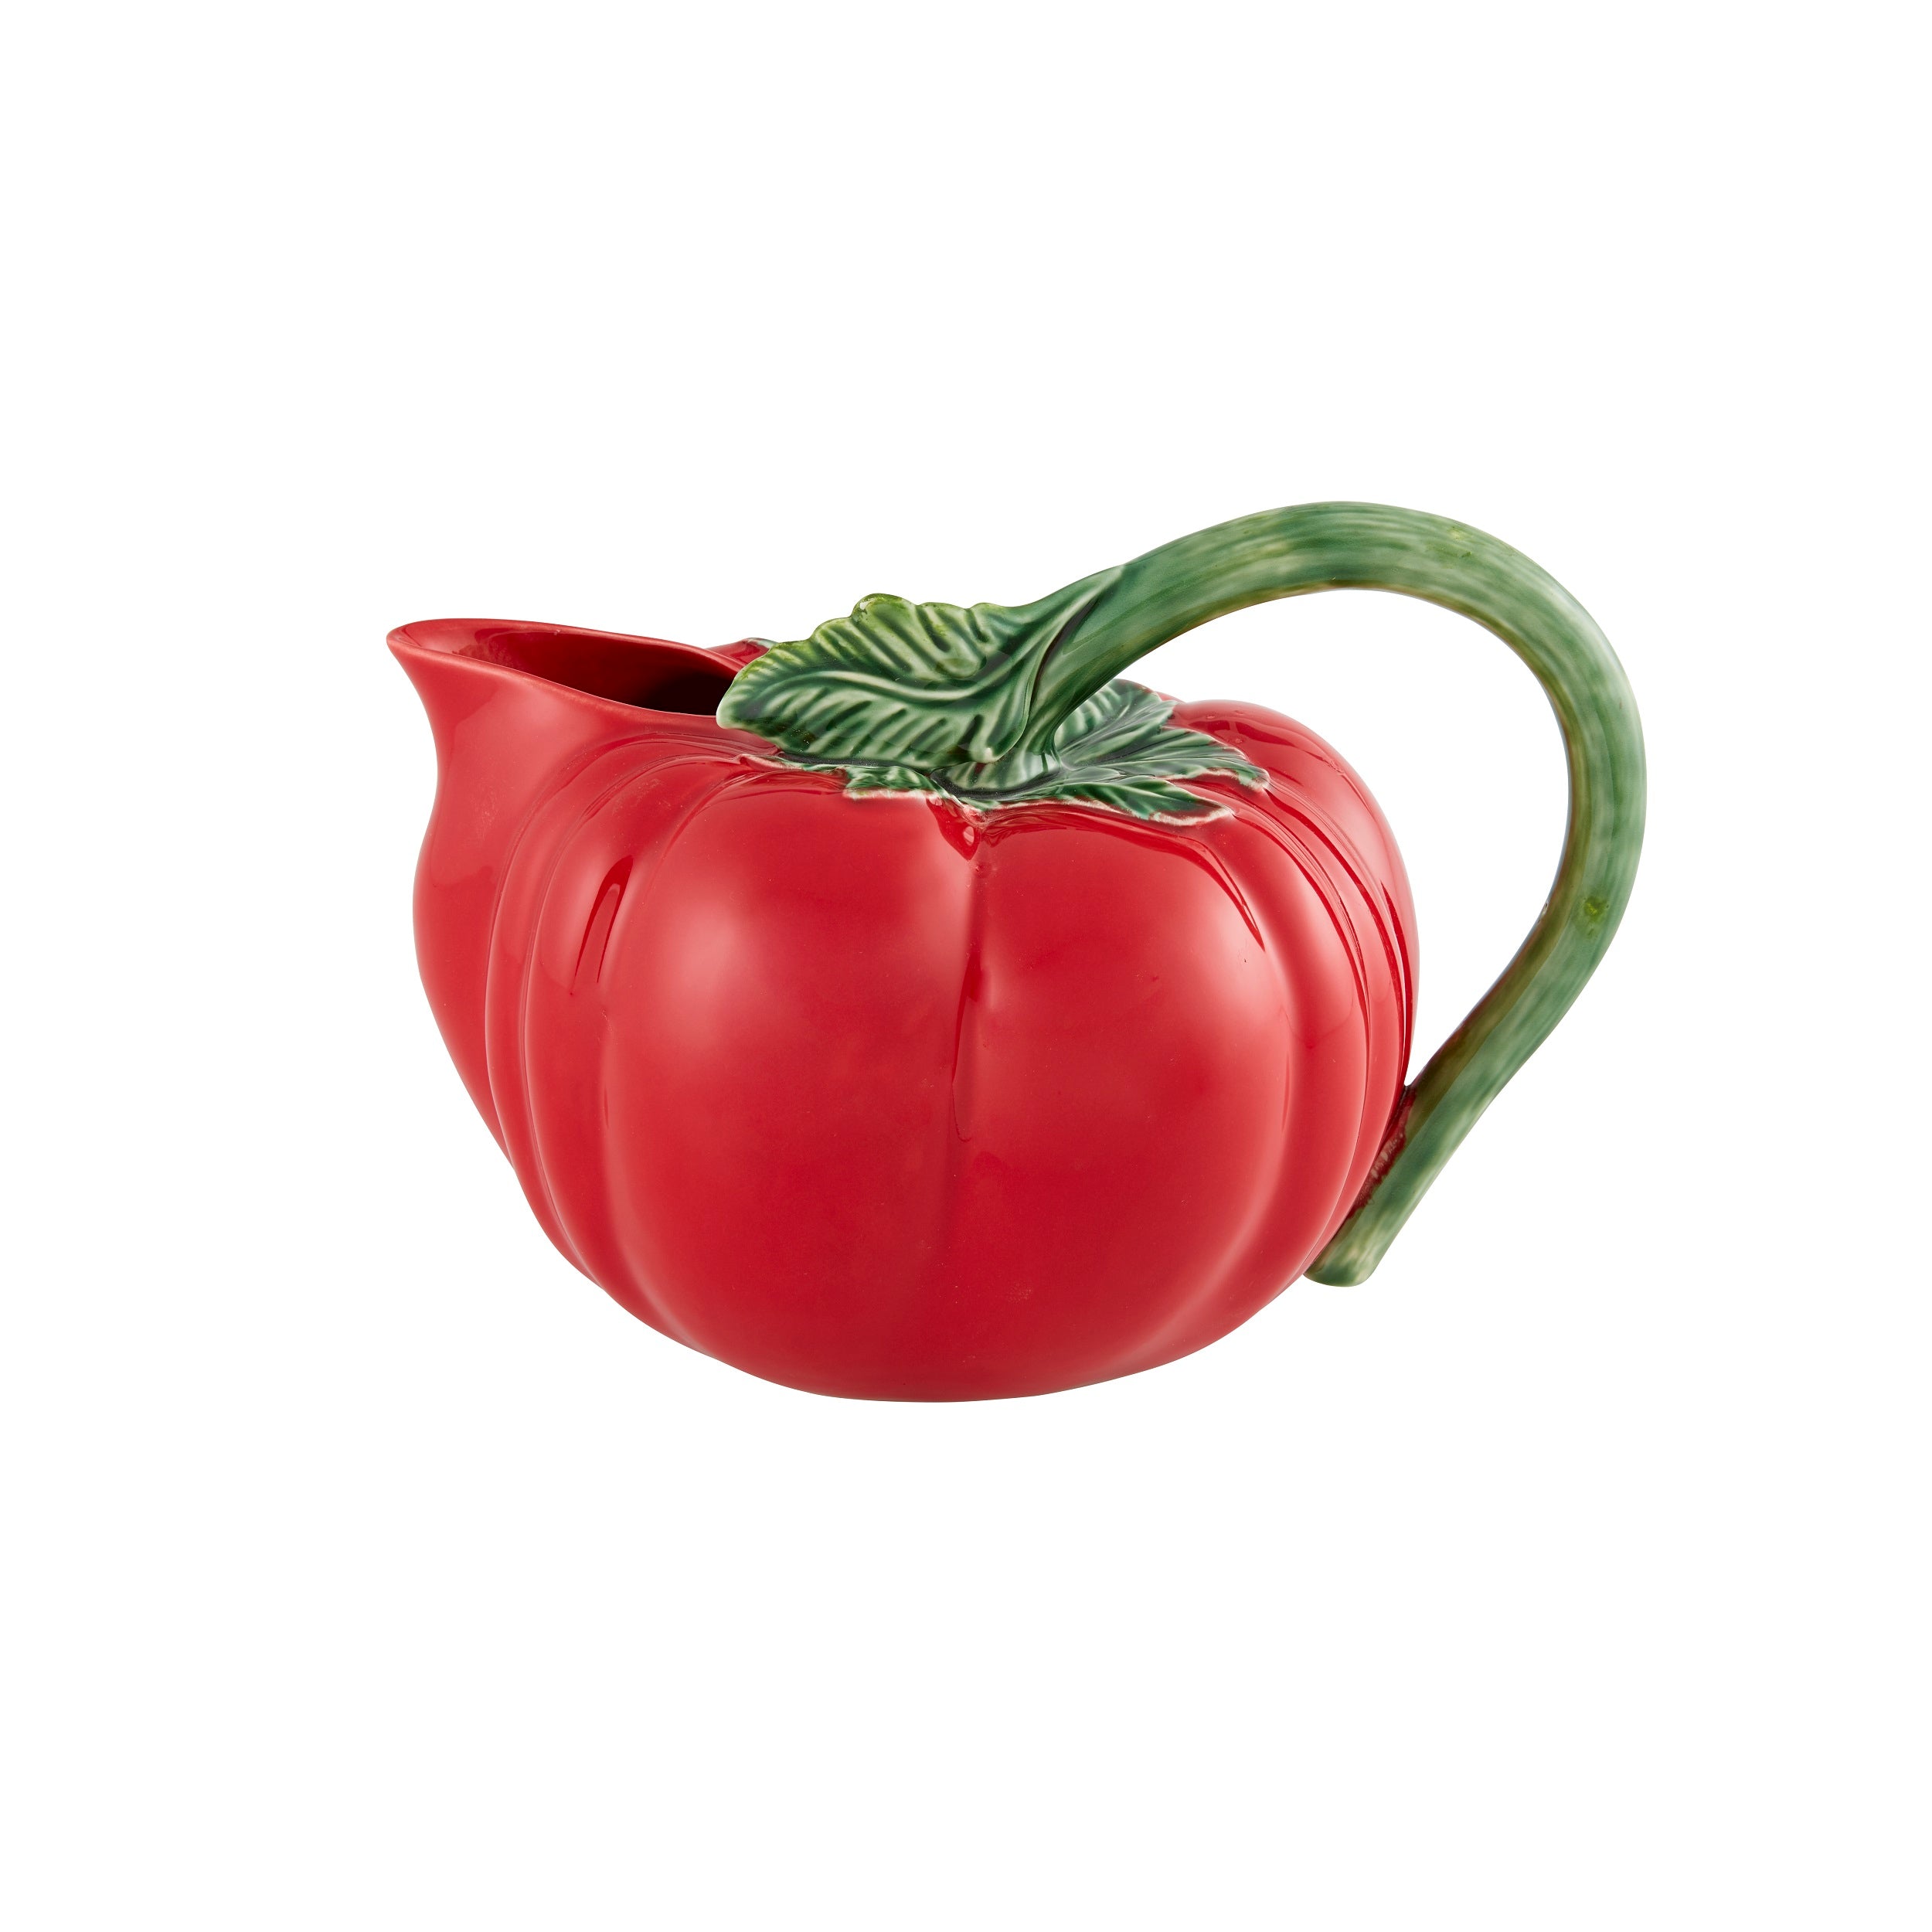 Bordallo Pinheiro Tomate Jug Tomato 4.5L